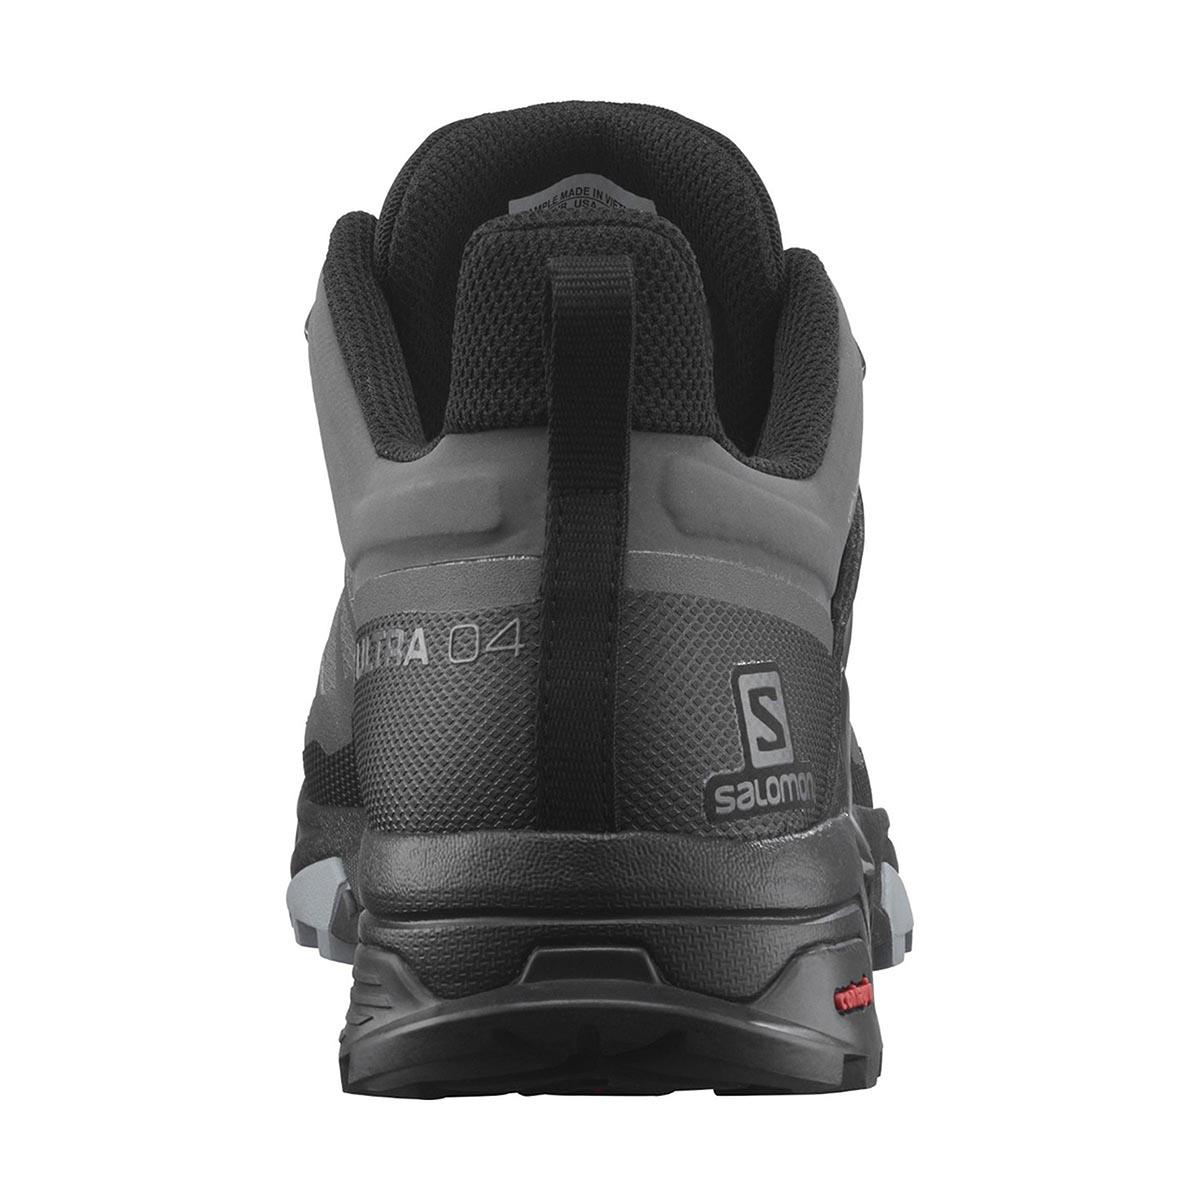  Salomon X Ultra 4 Gtx Erkek Outdoor Ayakkabı L41287000